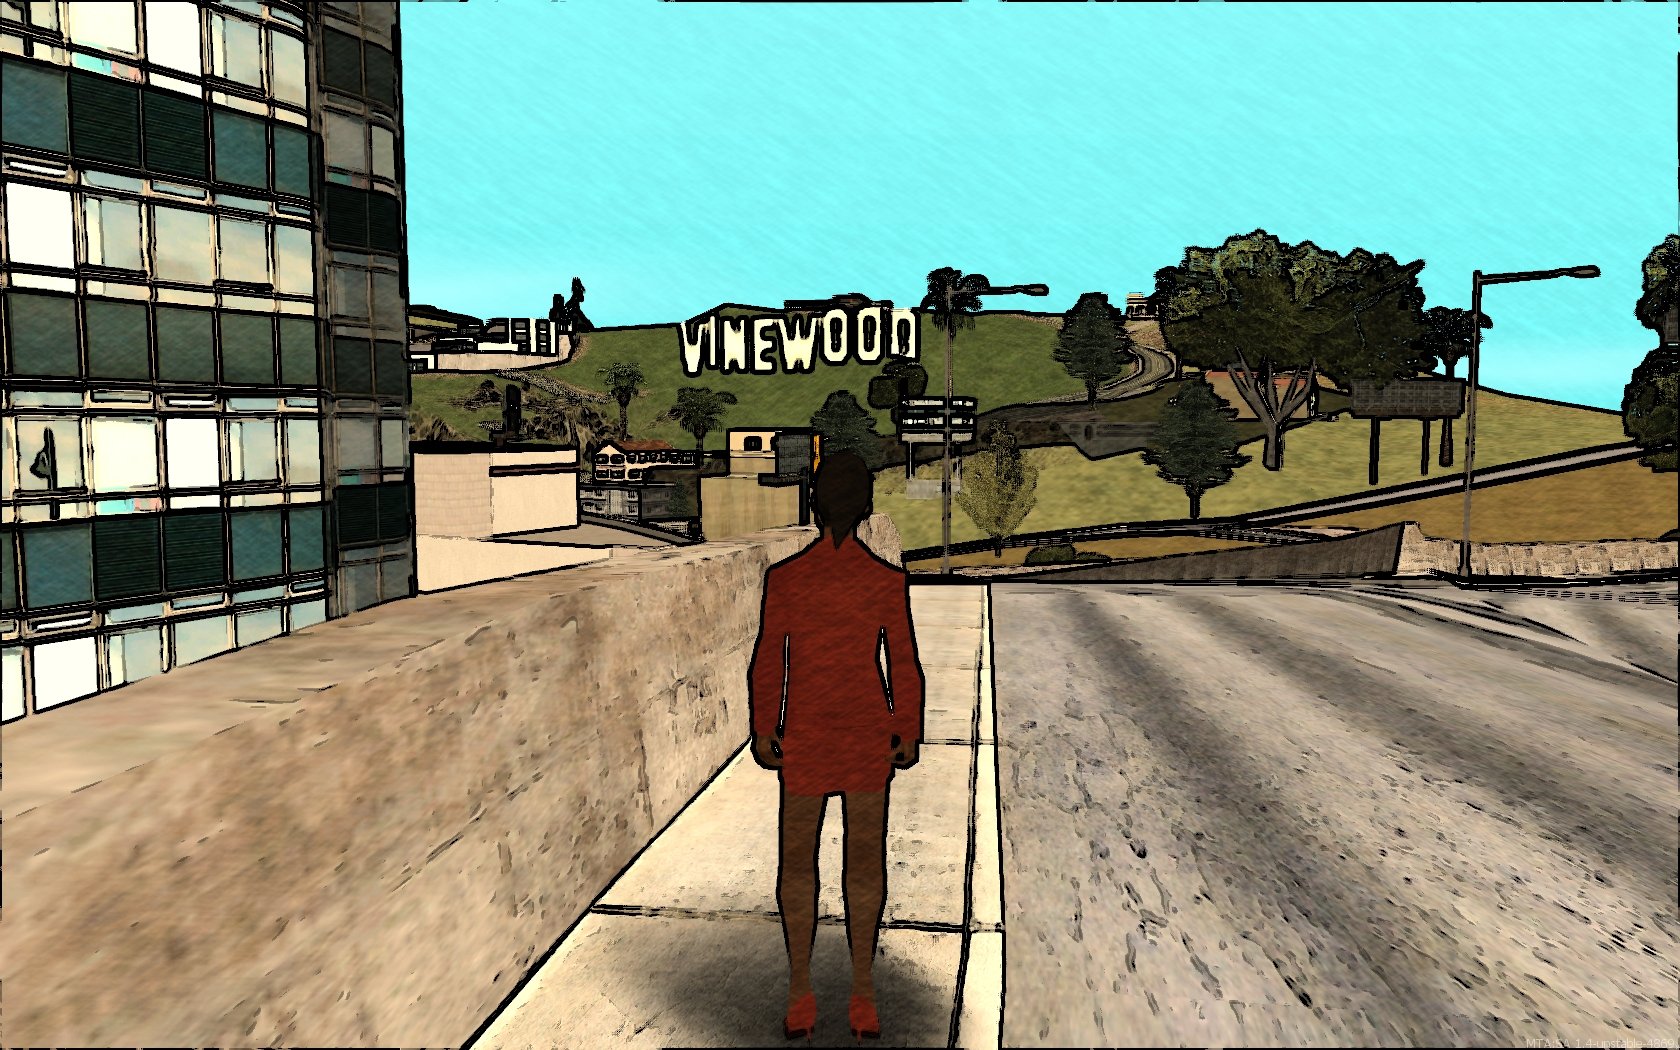 MTA Vault - Multi Theft Auto: Wiki